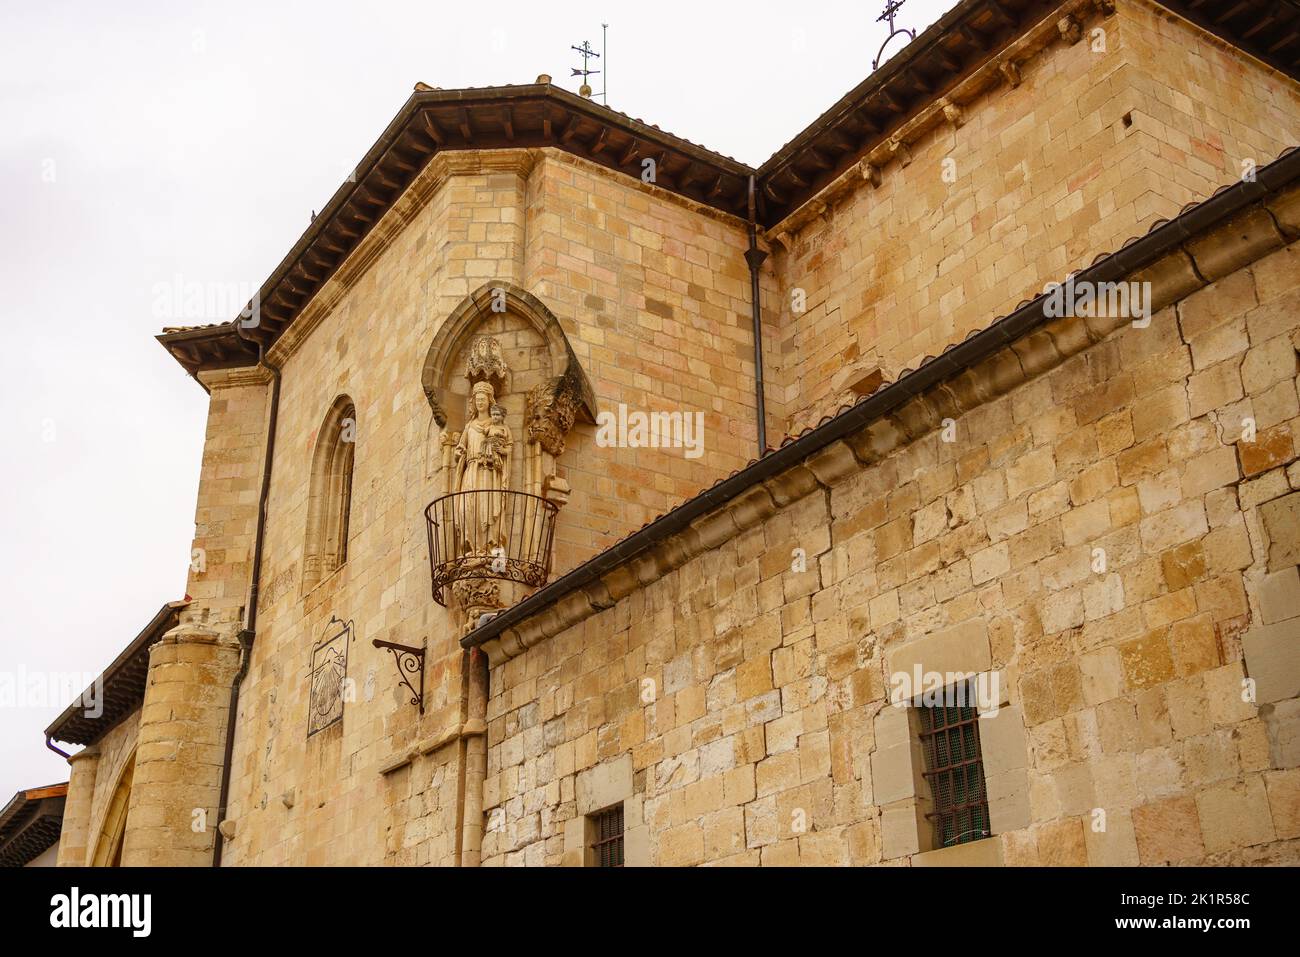 Sculpture of the famous White Virgin of the Church of San Pedro de Treviño, Burgos, Castilla y León, Spain Stock Photo